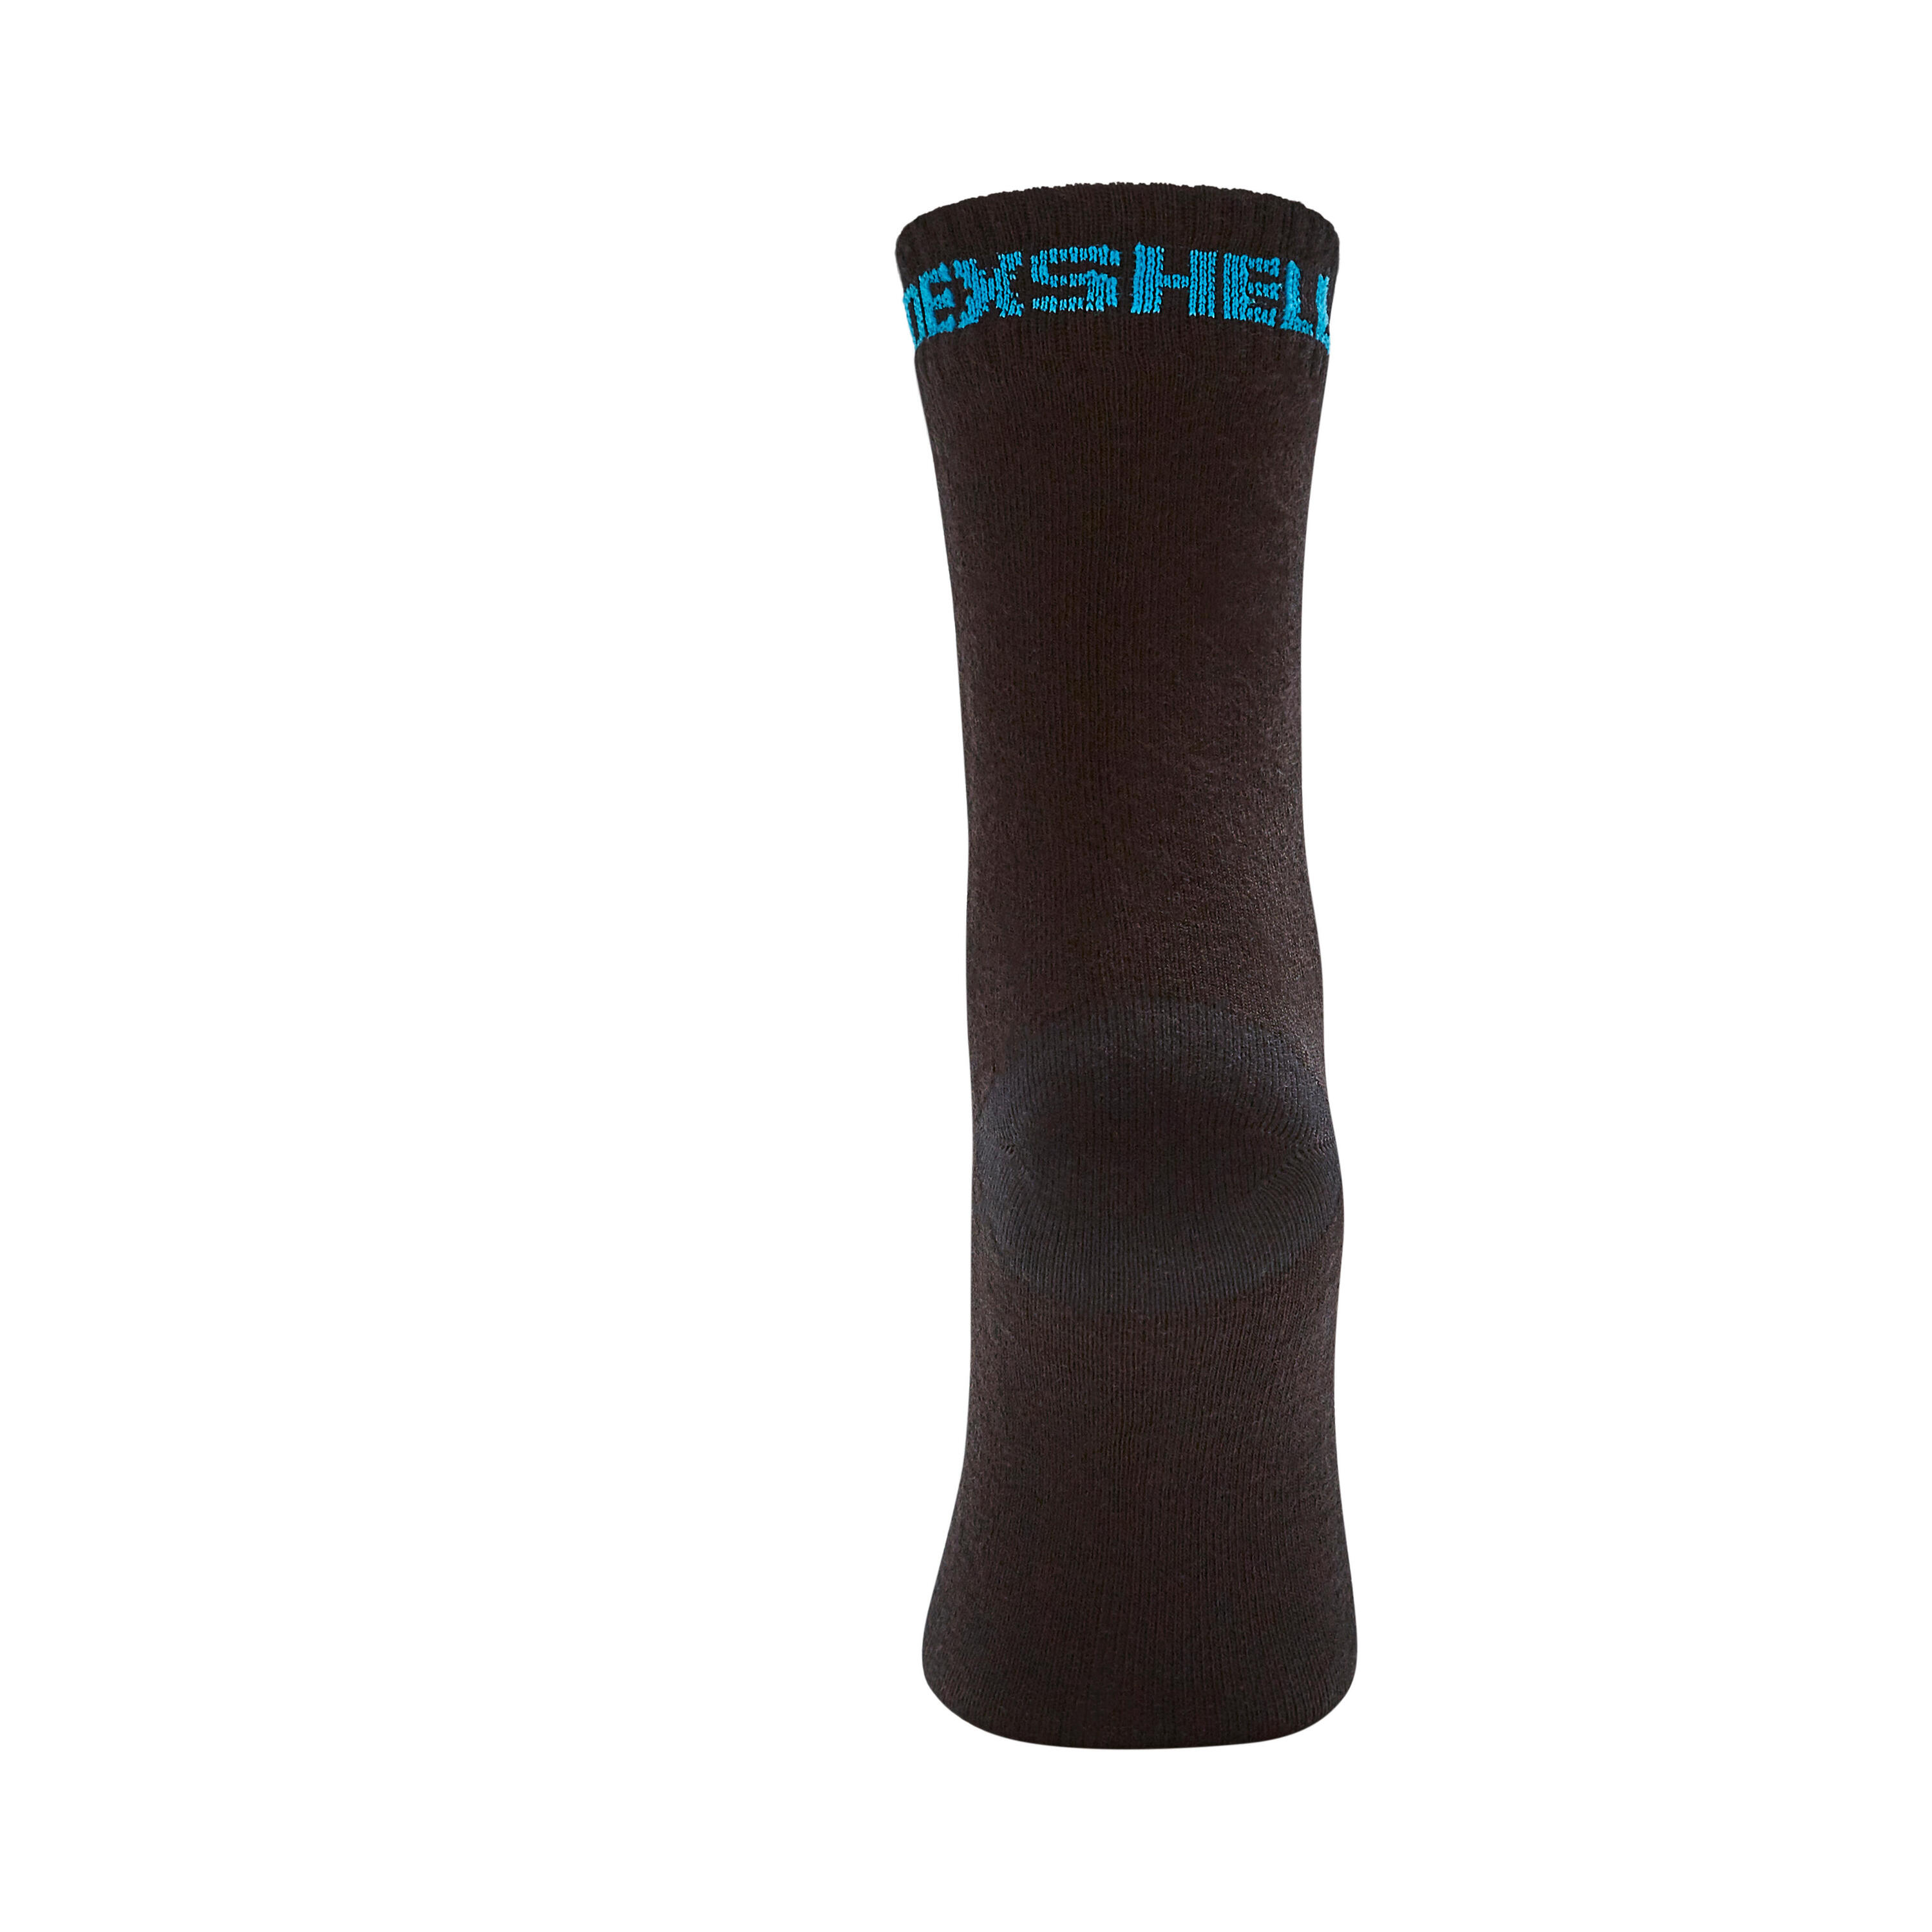 Waterproof Winter Cycling Socks DS683 6/6